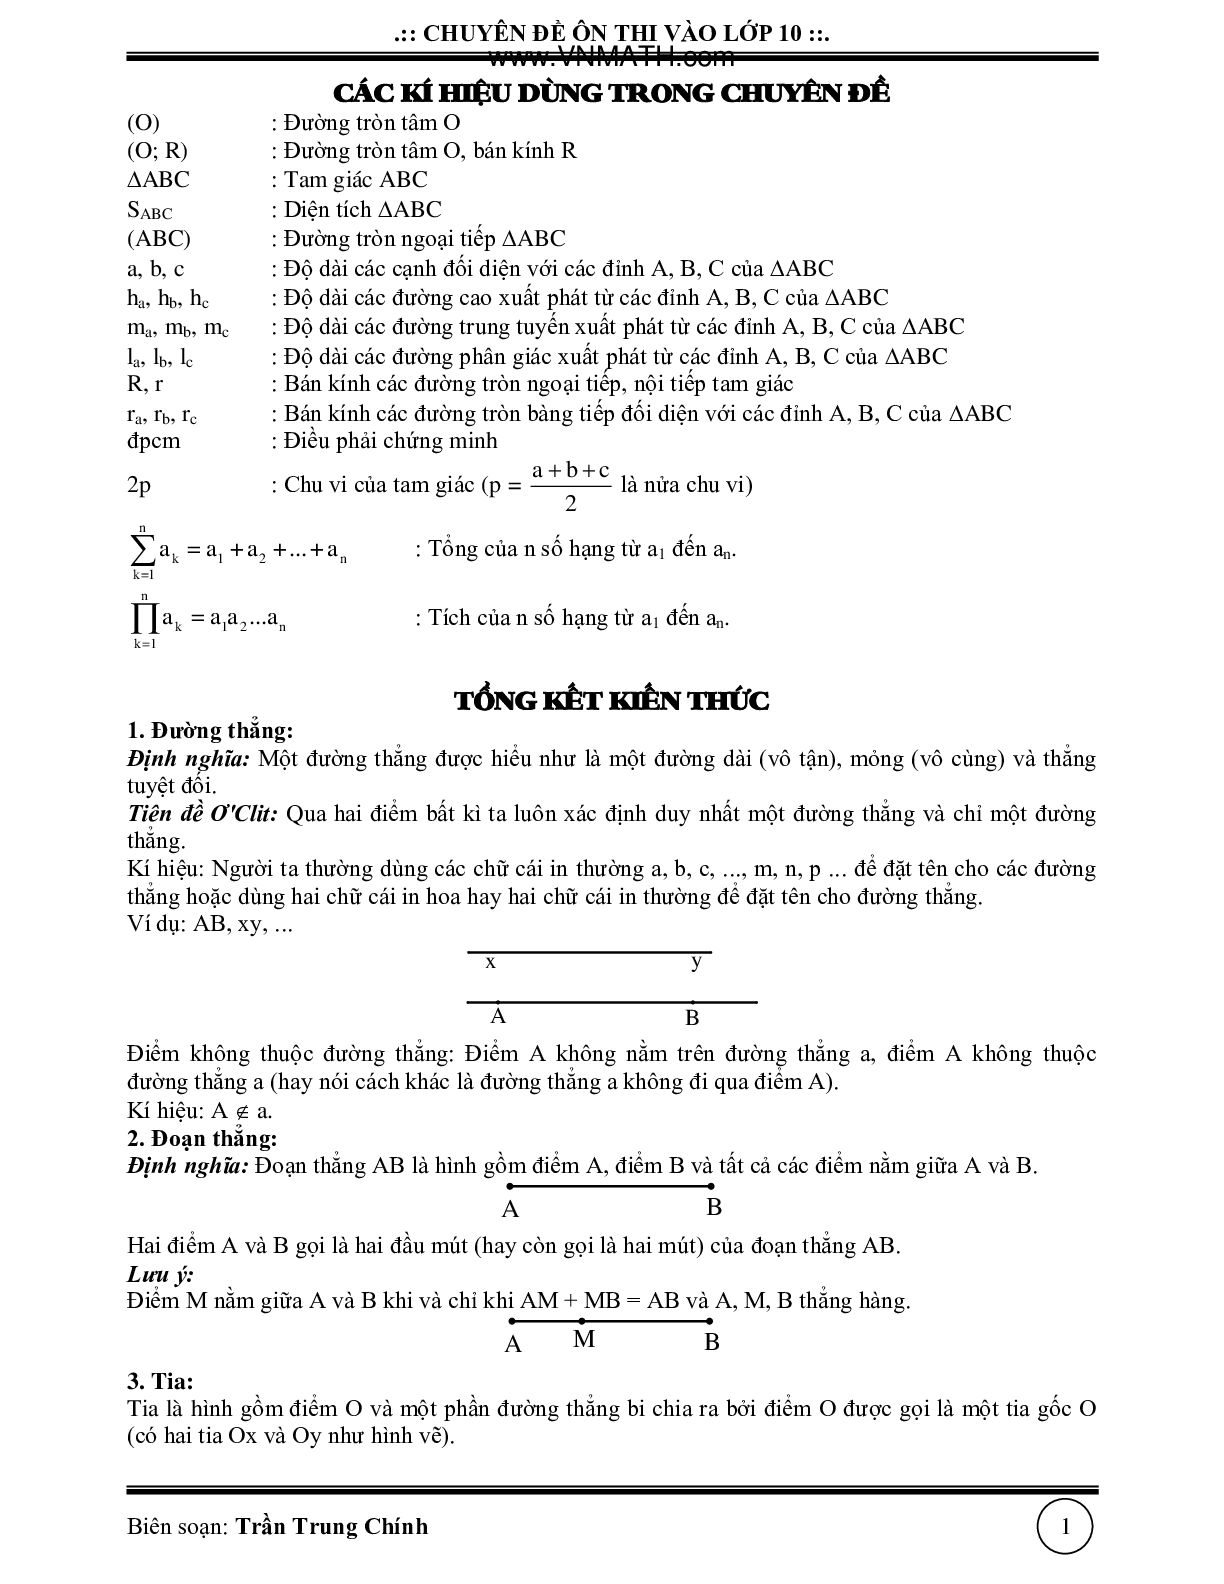 Chuyên đề luyện thi vào lớp 10 phần Hình học (trang 2)